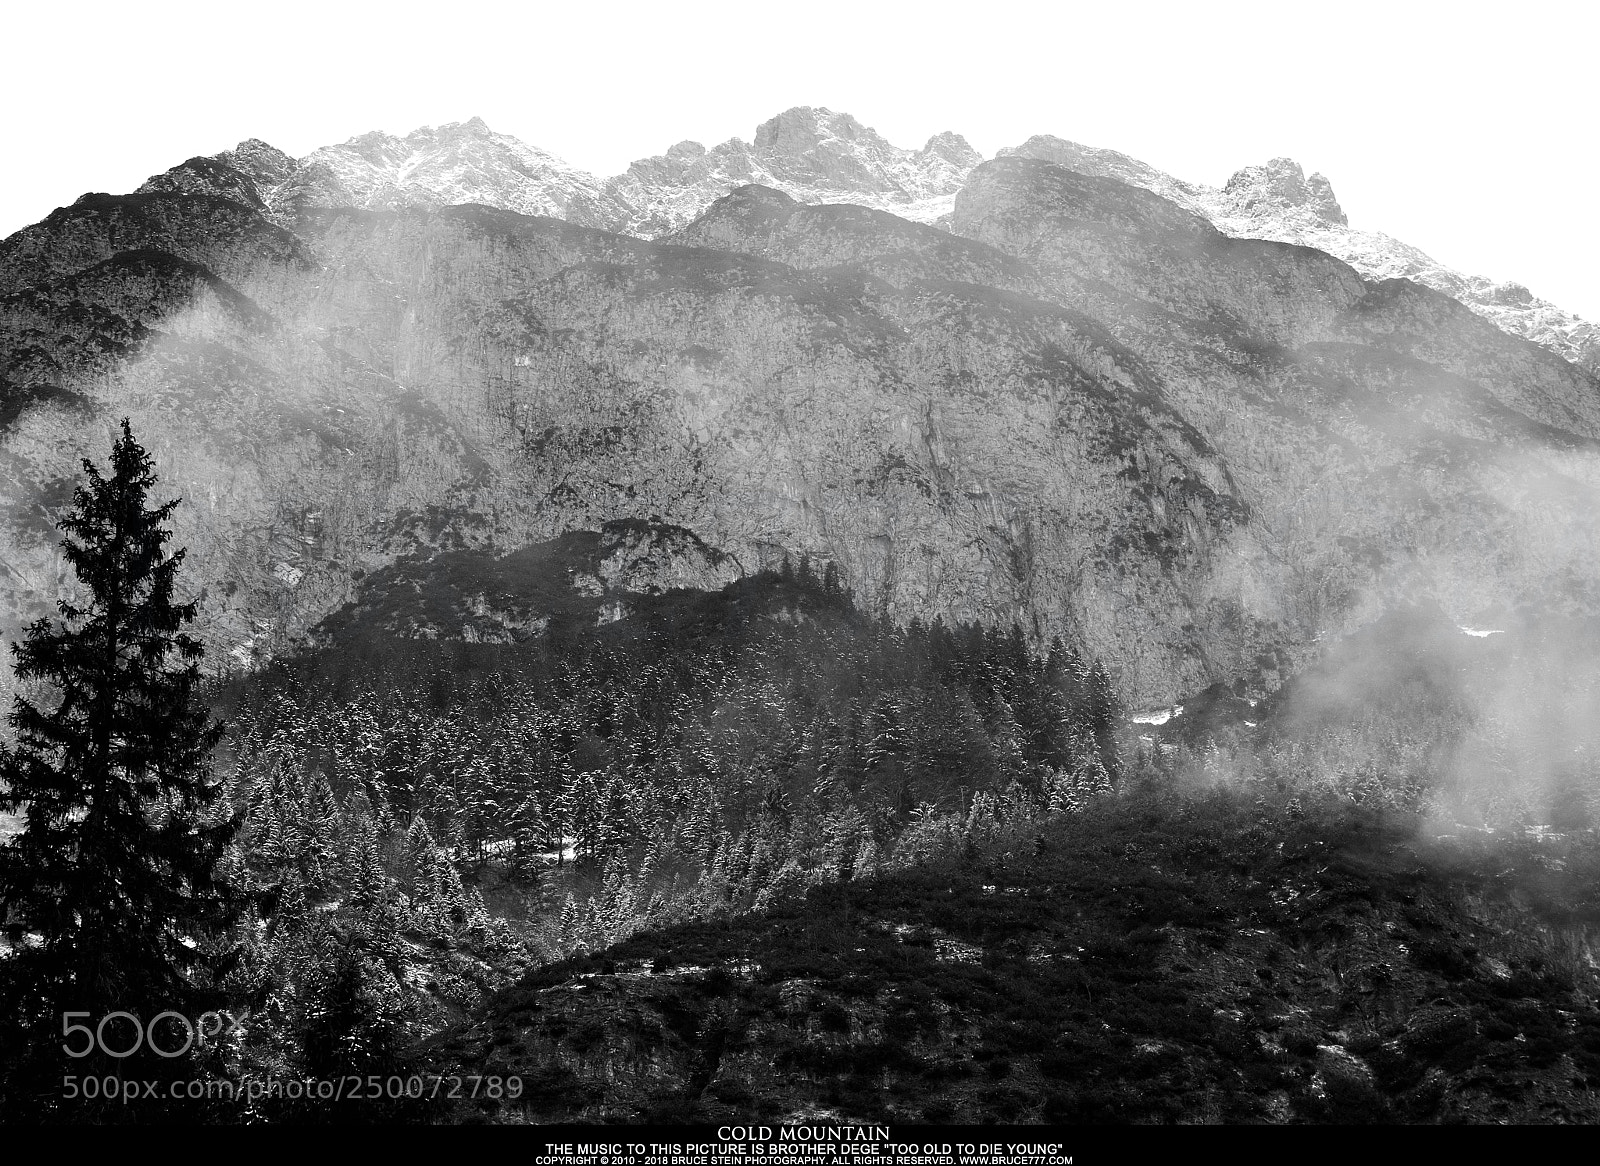 Nikon D90 sample photo. Cold mountain photography